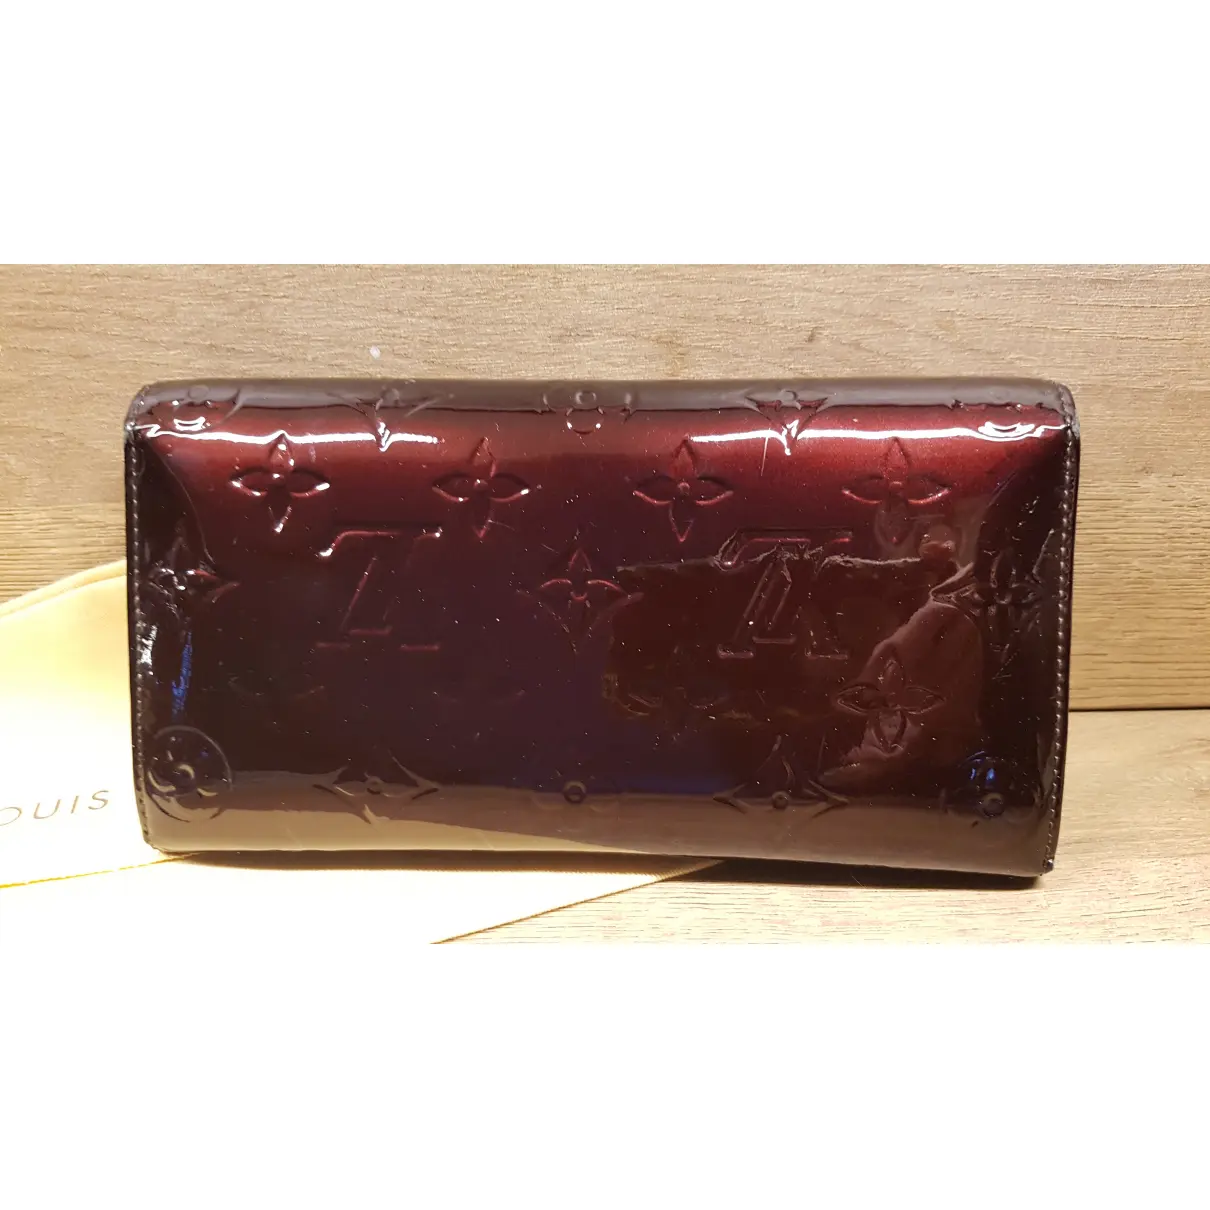 Buy Louis Vuitton Sarah patent leather wallet online